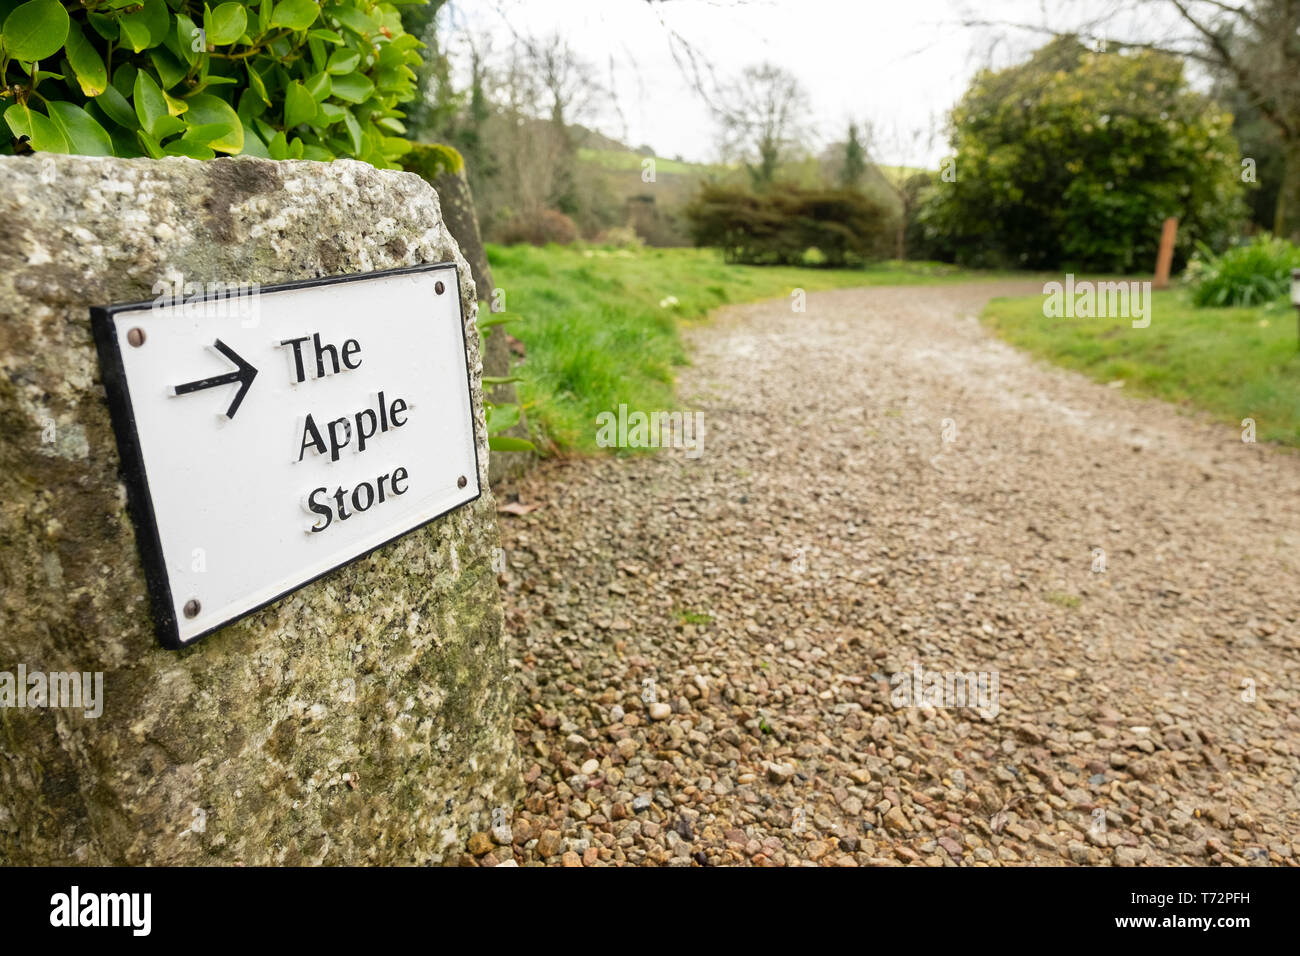 Eine alternative "Apple Store" Schild, Bosveal Manor House, Cornwall, England. Wo Äpfel wurden gehalten, bevor Kühlschränke erfunden wurden. Stockfoto